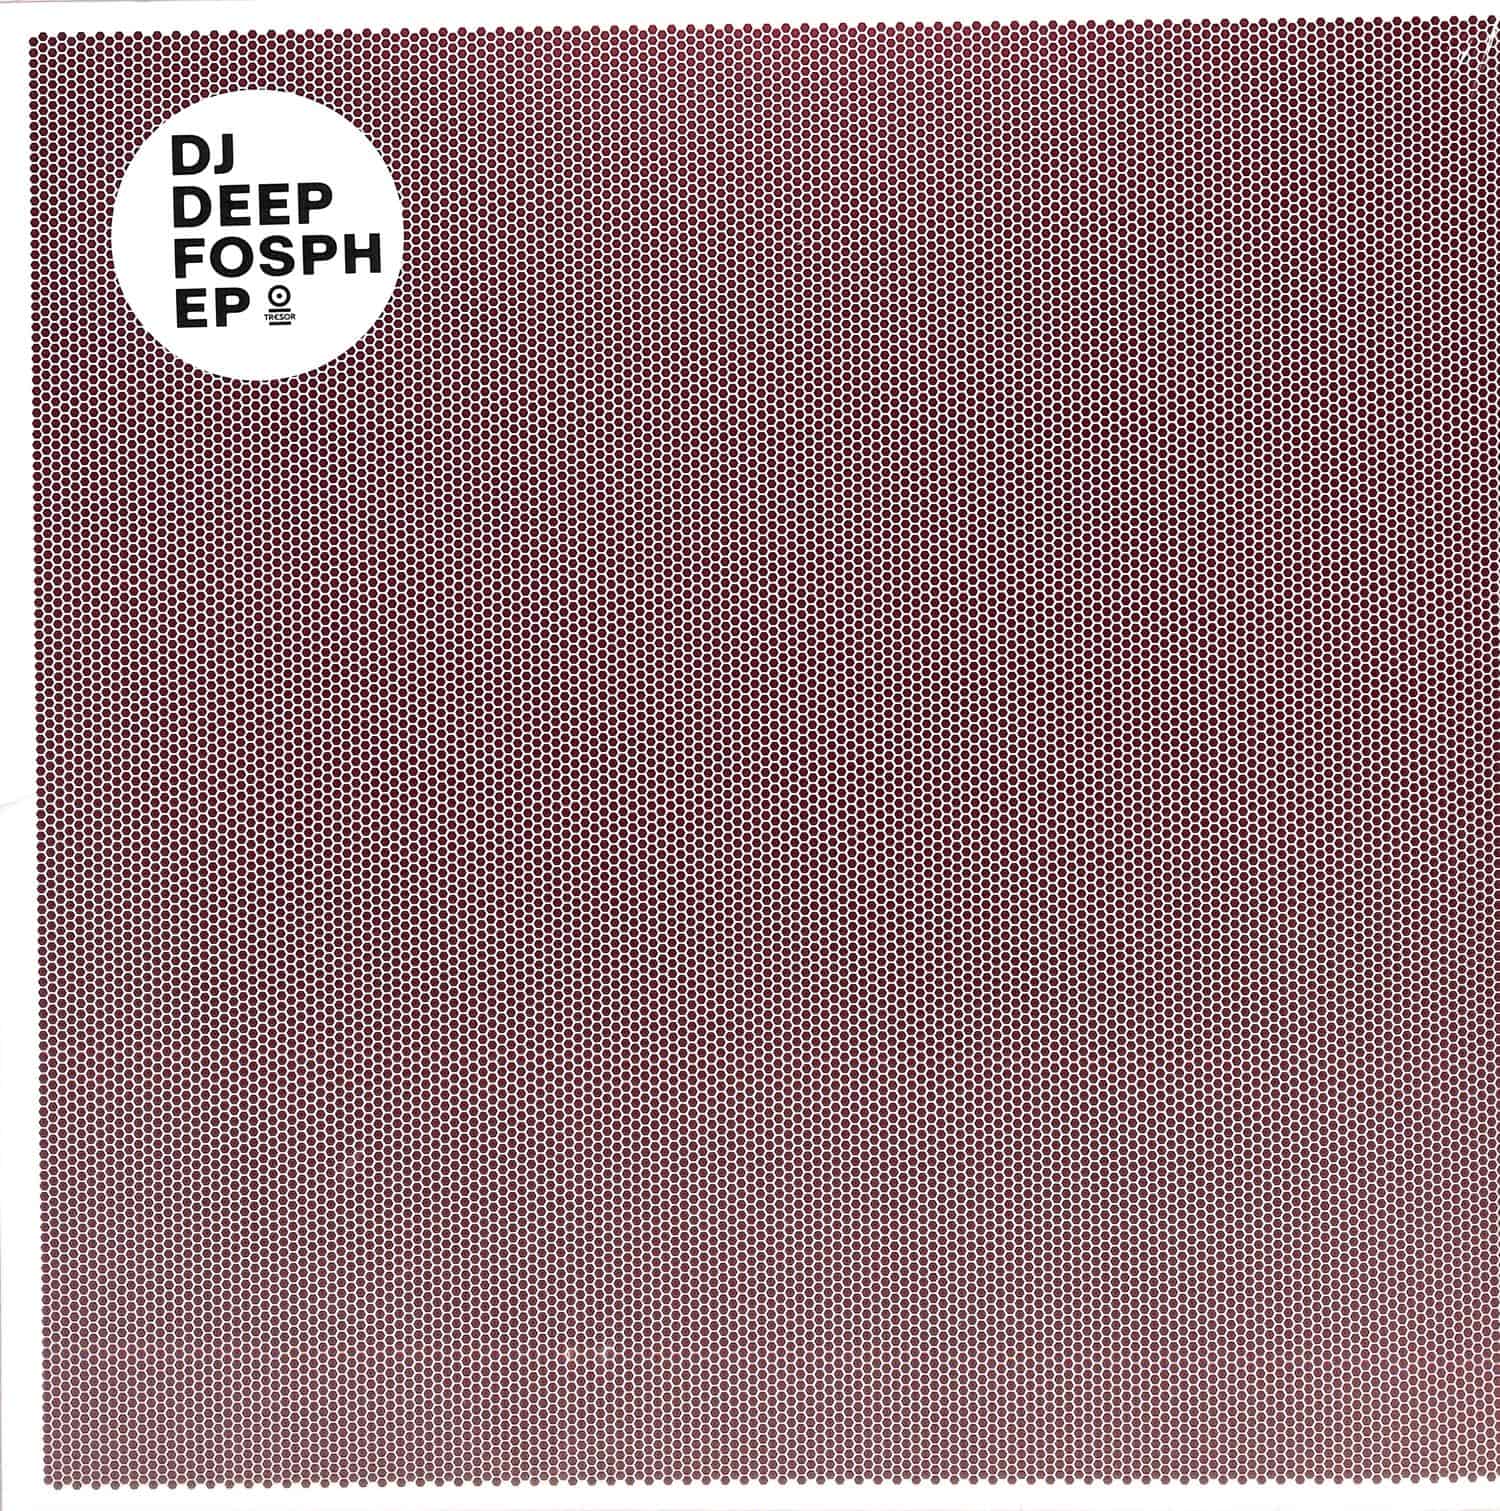 DJ Deep - FOSPH EP